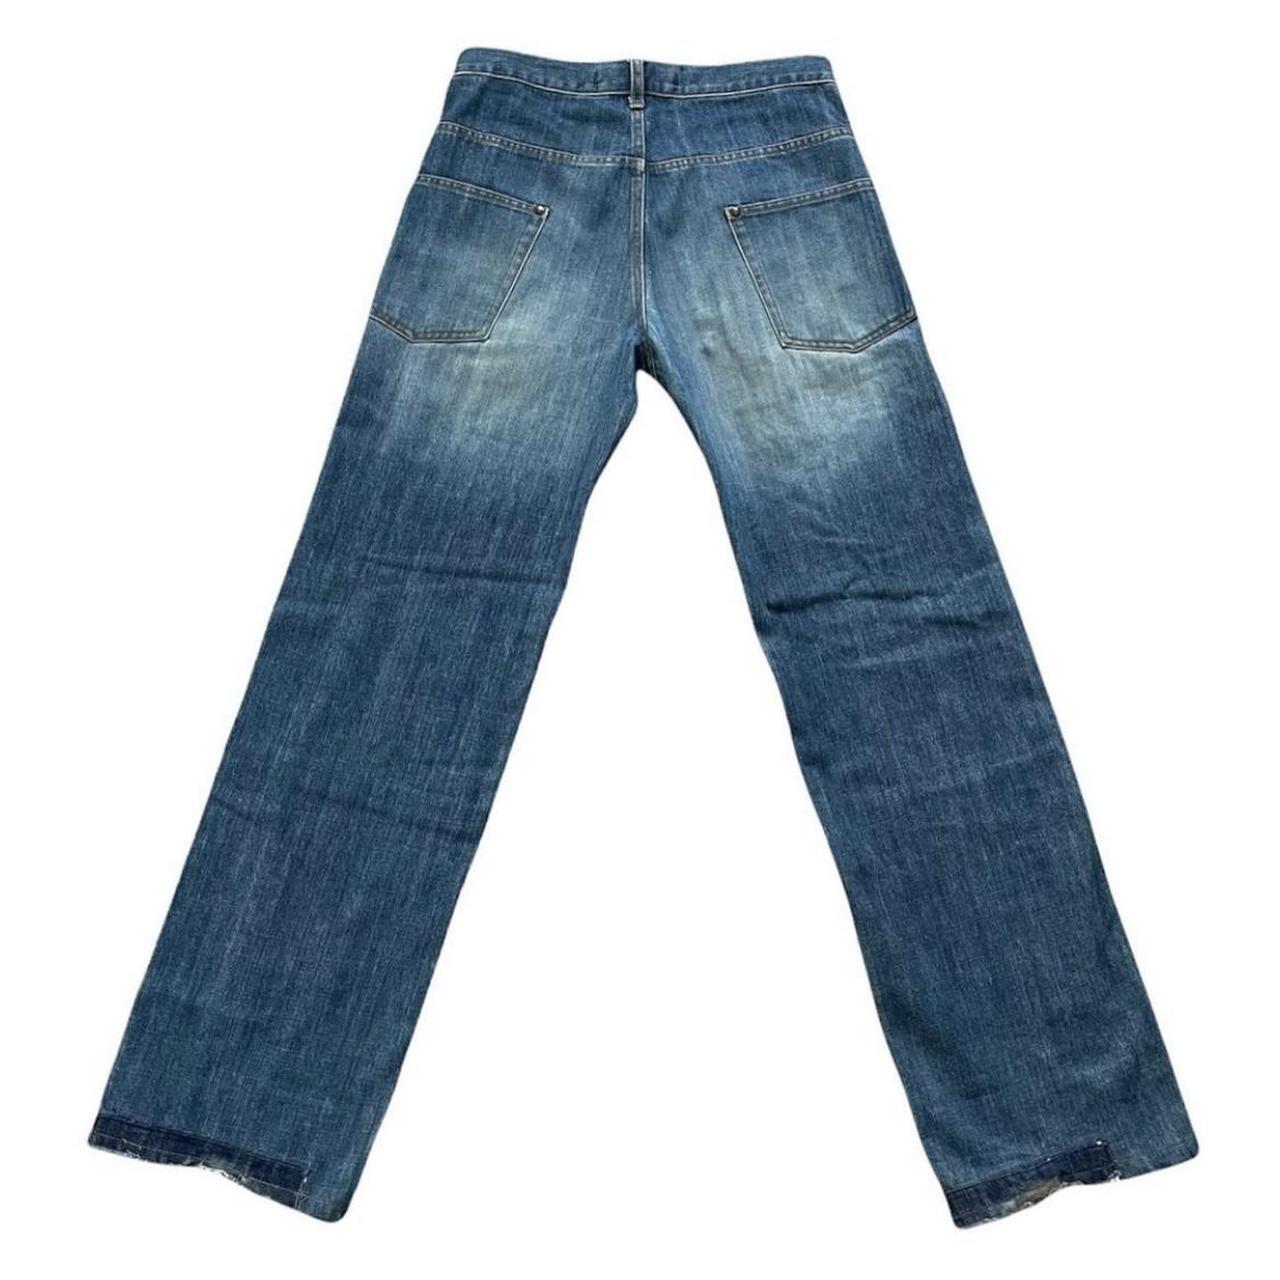 Maison Mihara Yasuhiro Men's Blue and Navy Jeans (2)